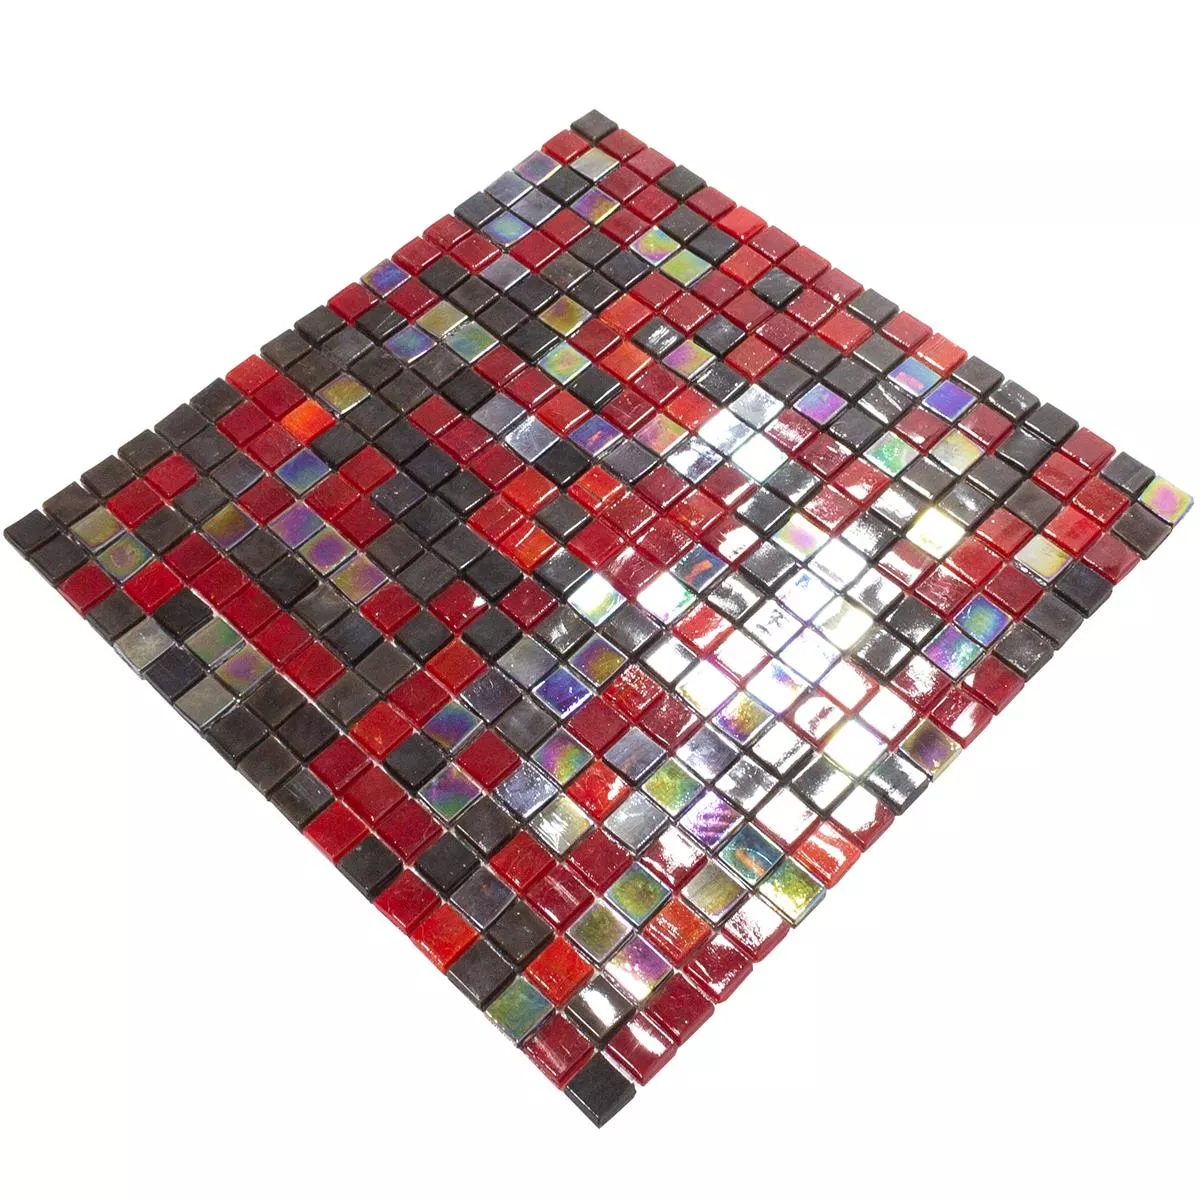 Mozaiki Szklana Płytki Salsa Czerwone Czarny